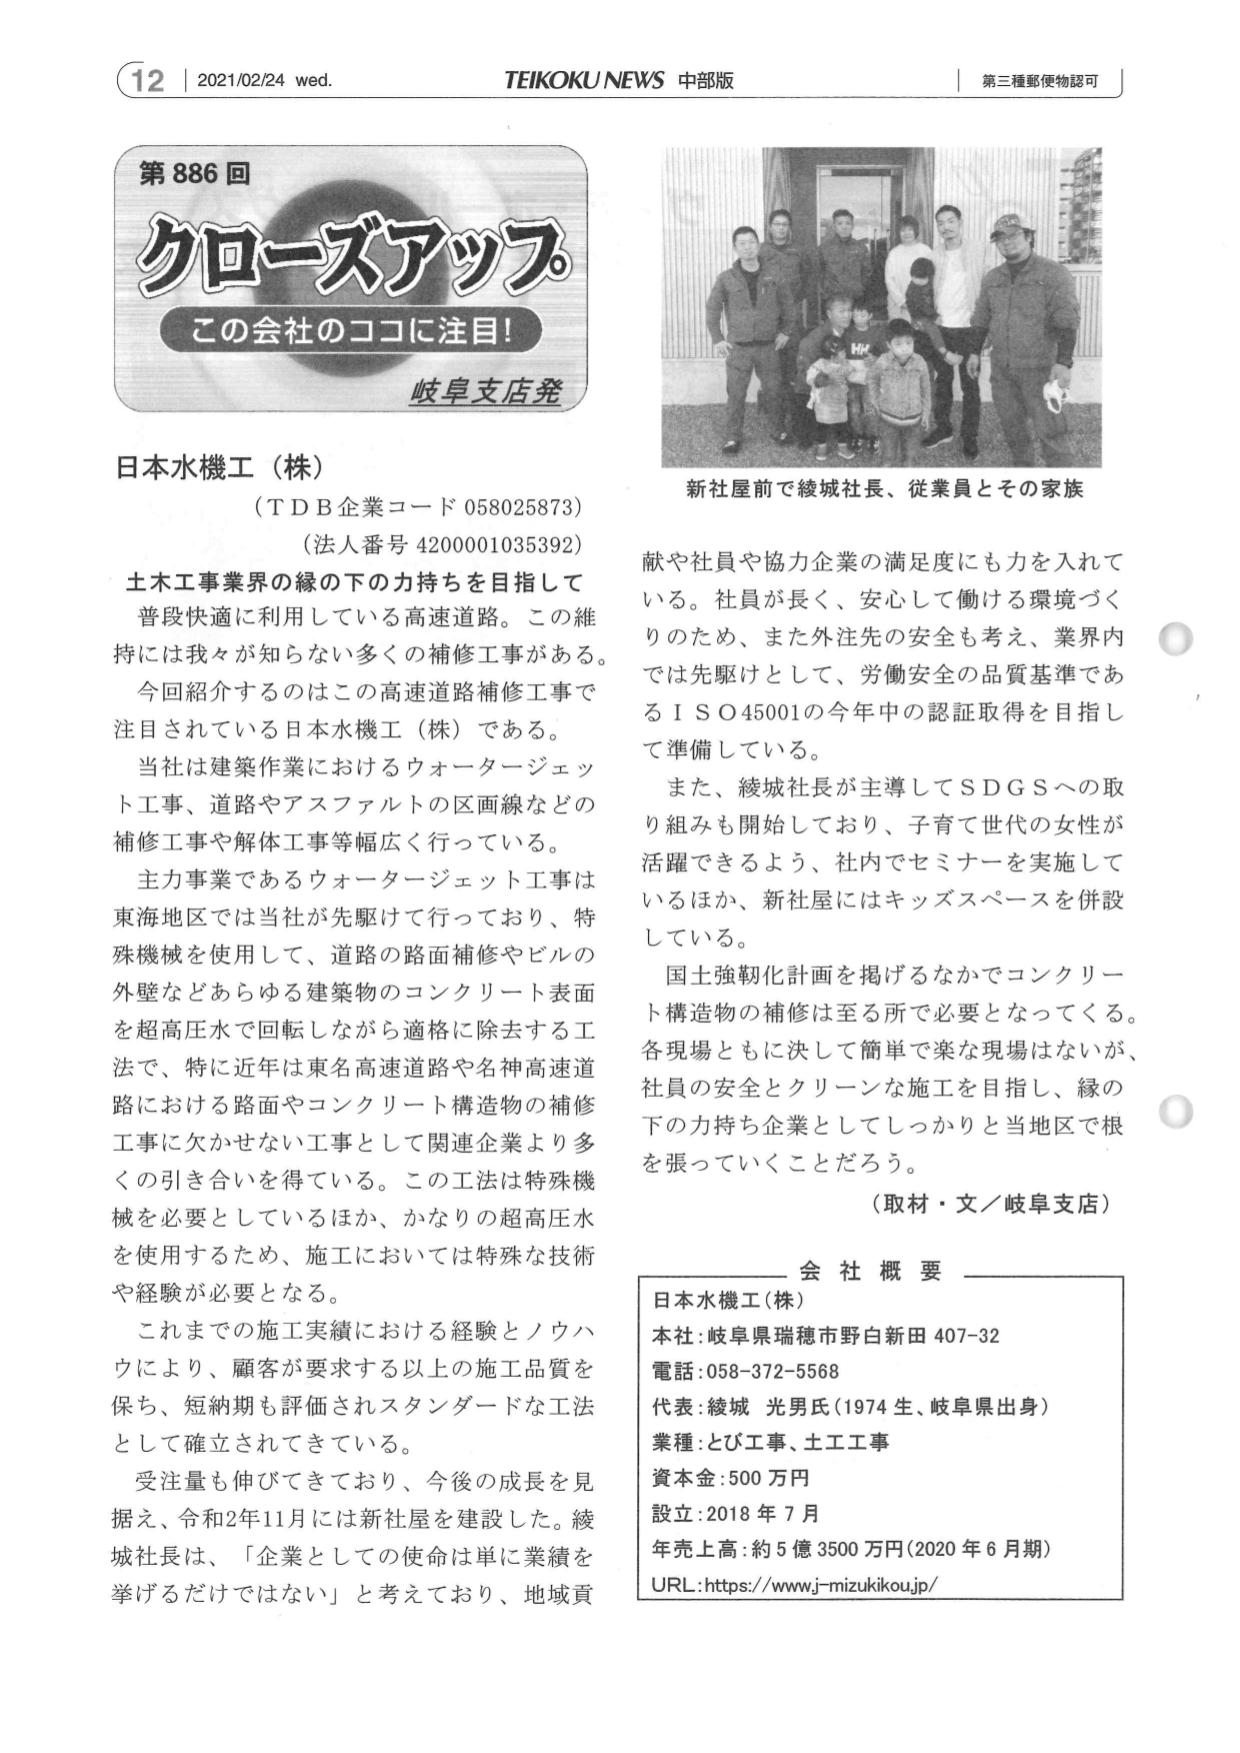 帝国ニュース　中部版　2月24日　日本水機工（株）が紹介されました。